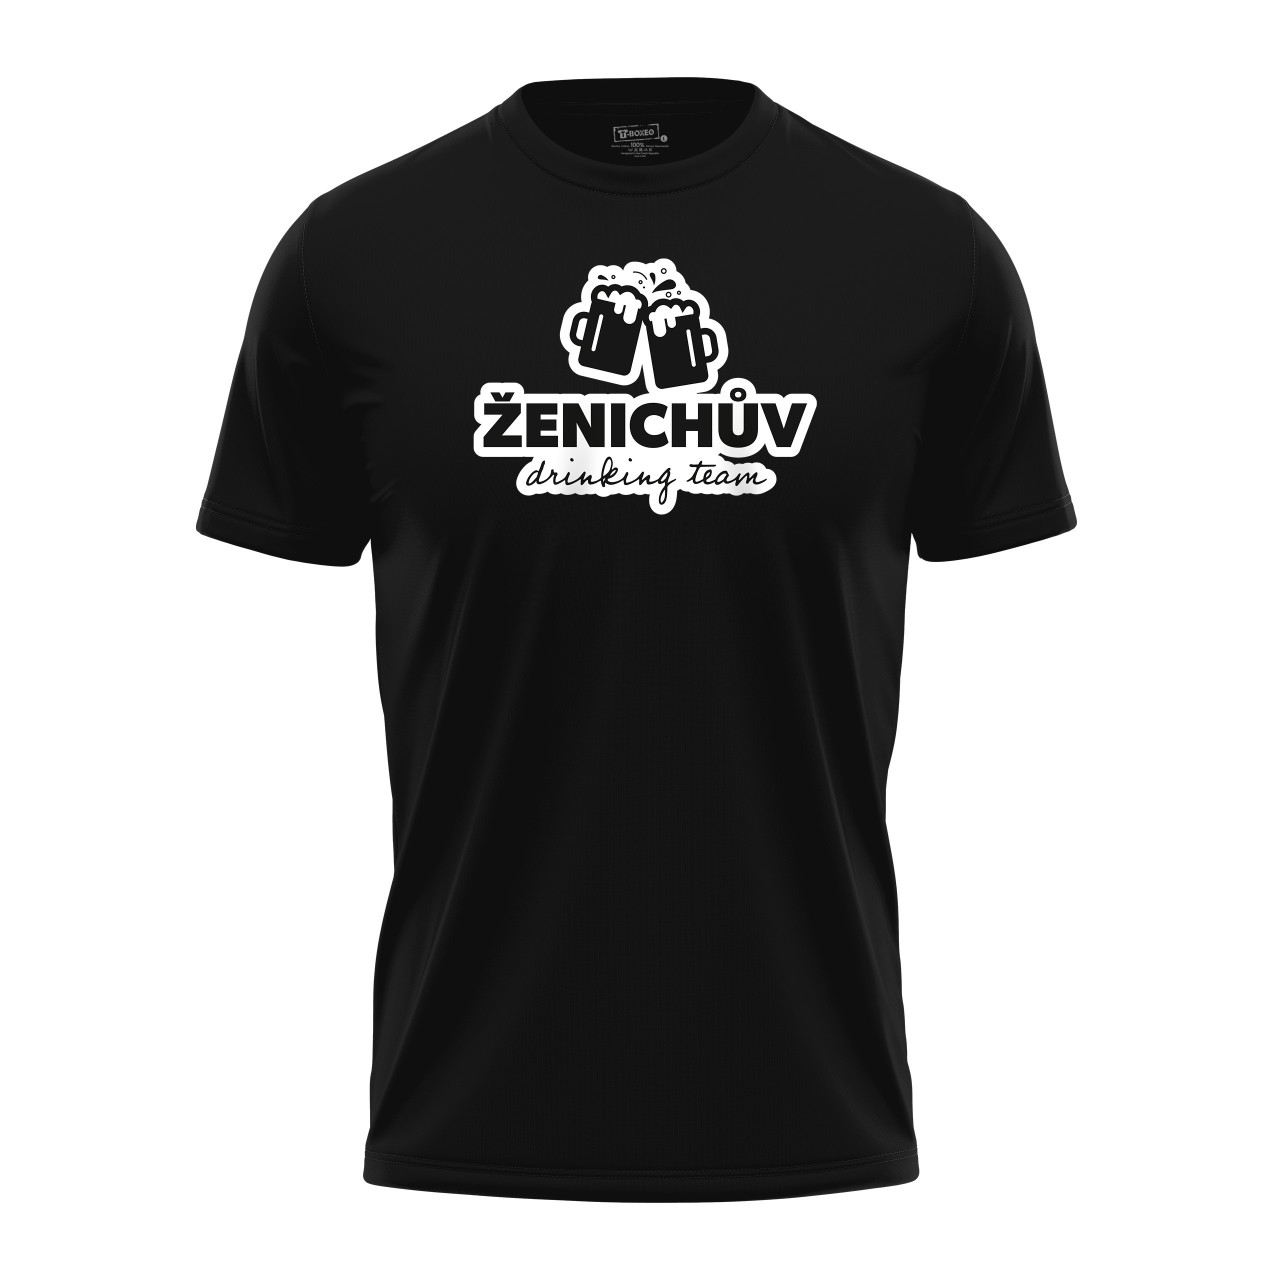 Pánské tričko s potiskem “Ženichův drinking team”